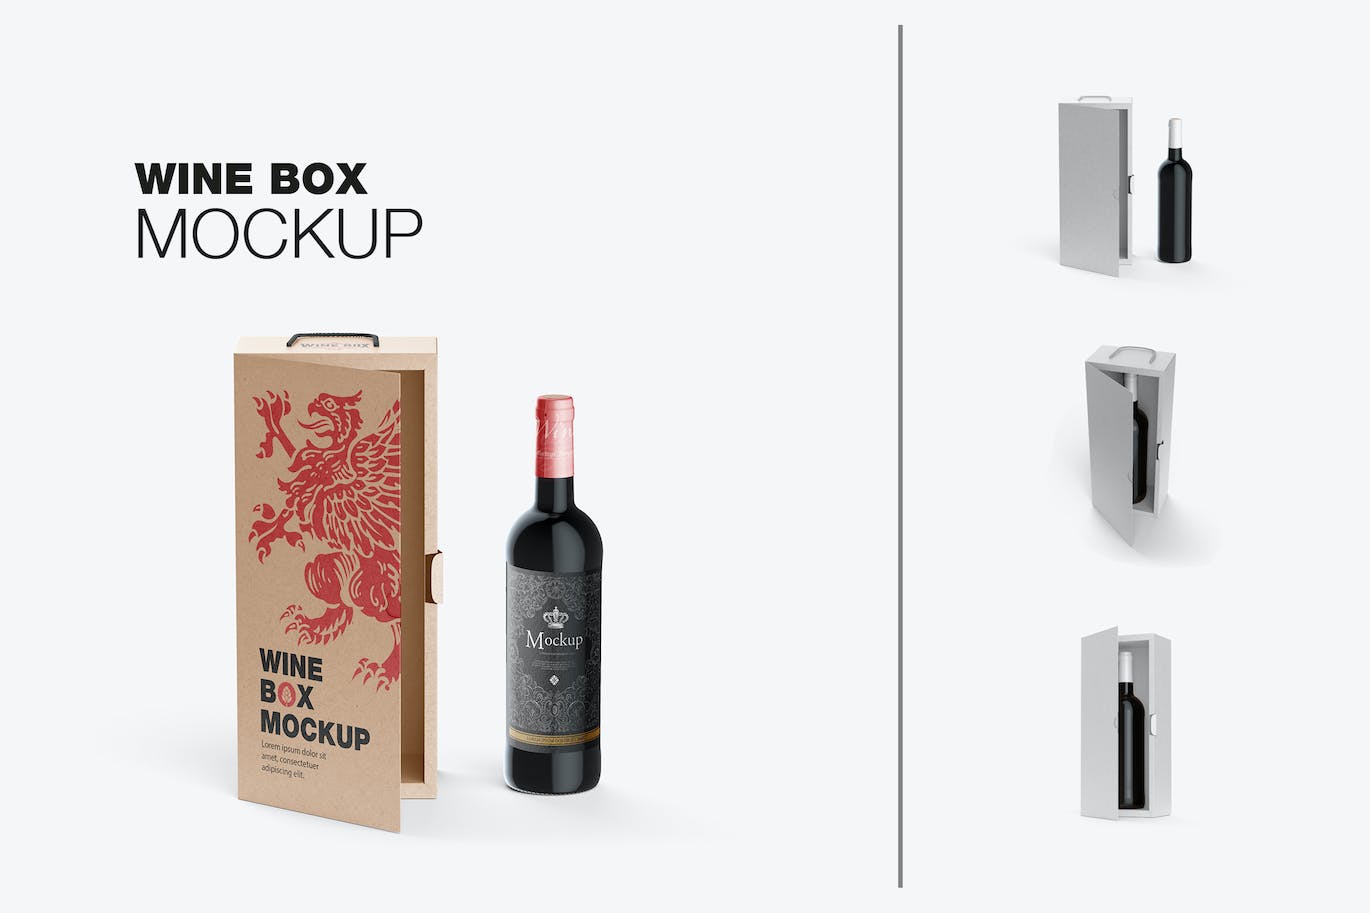 红酒酒瓶纸礼盒品牌包装设计样机 Box with Wine Bottle Mockup 样机素材 第1张